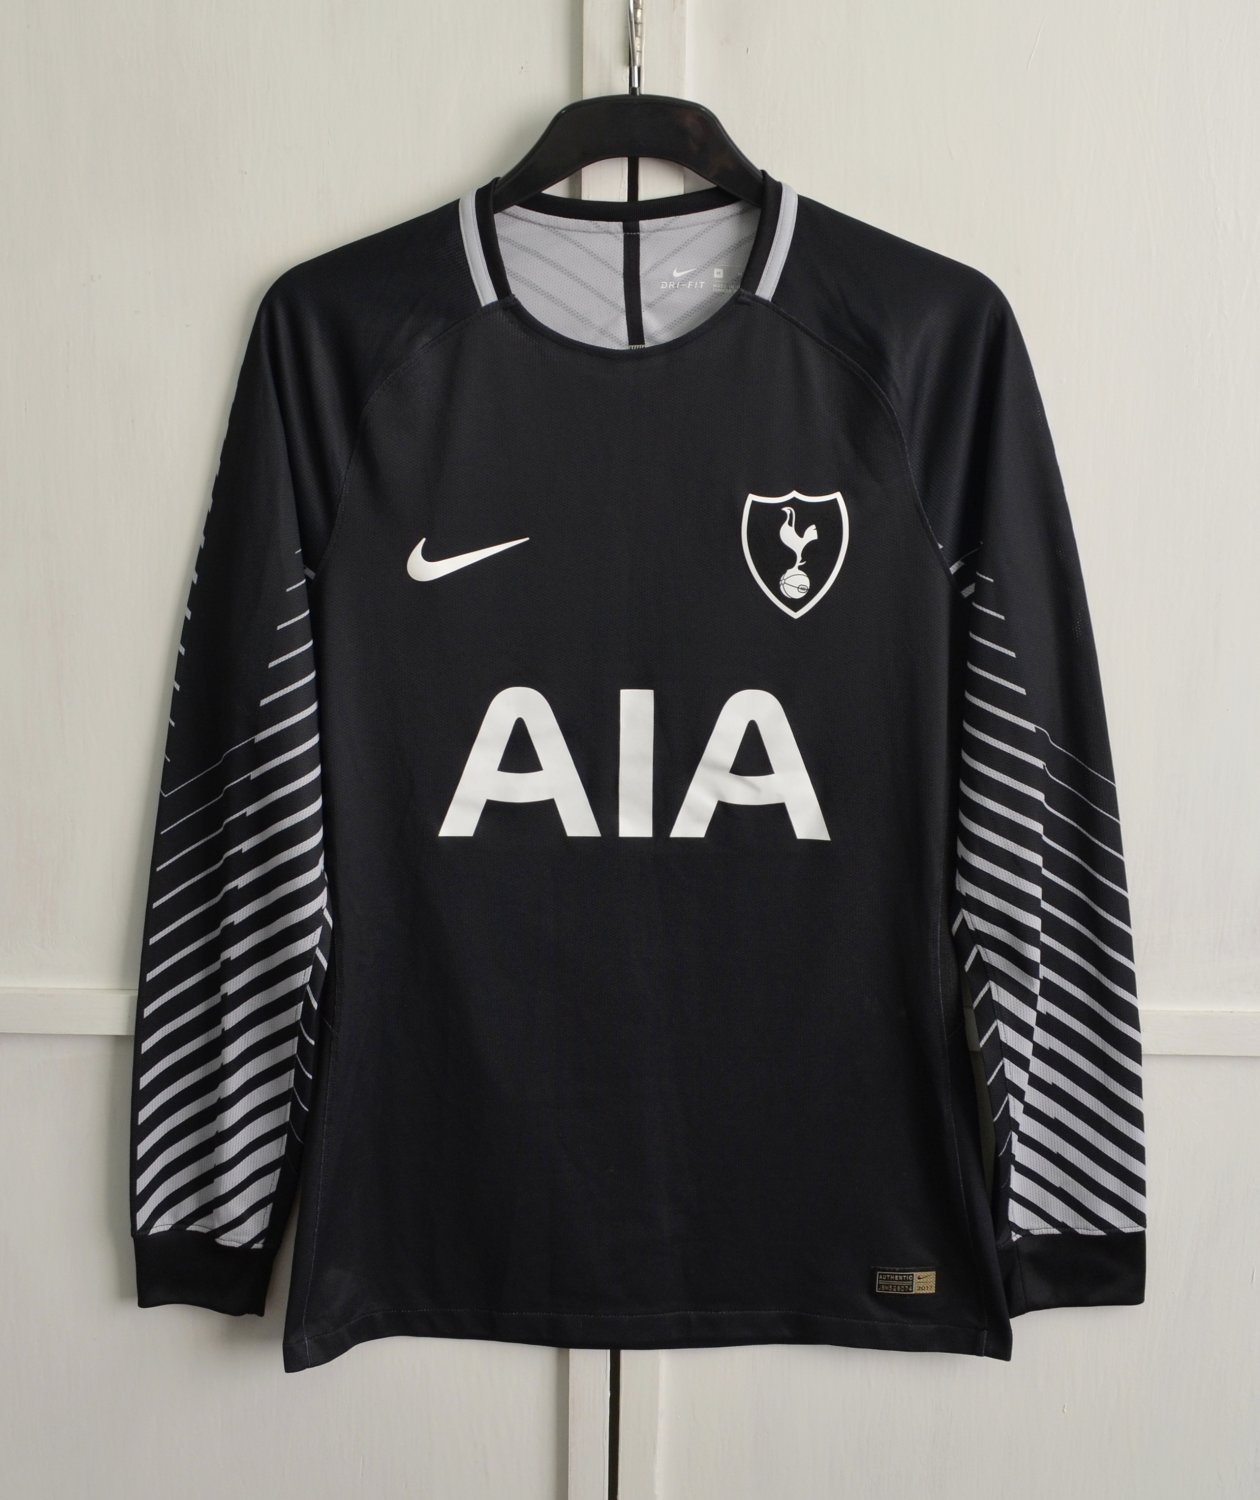 Escarpa techo Regreso Tottenham Hotspur Portero Camiseta de Fútbol 2017 - 2018. Sponsored by AIA